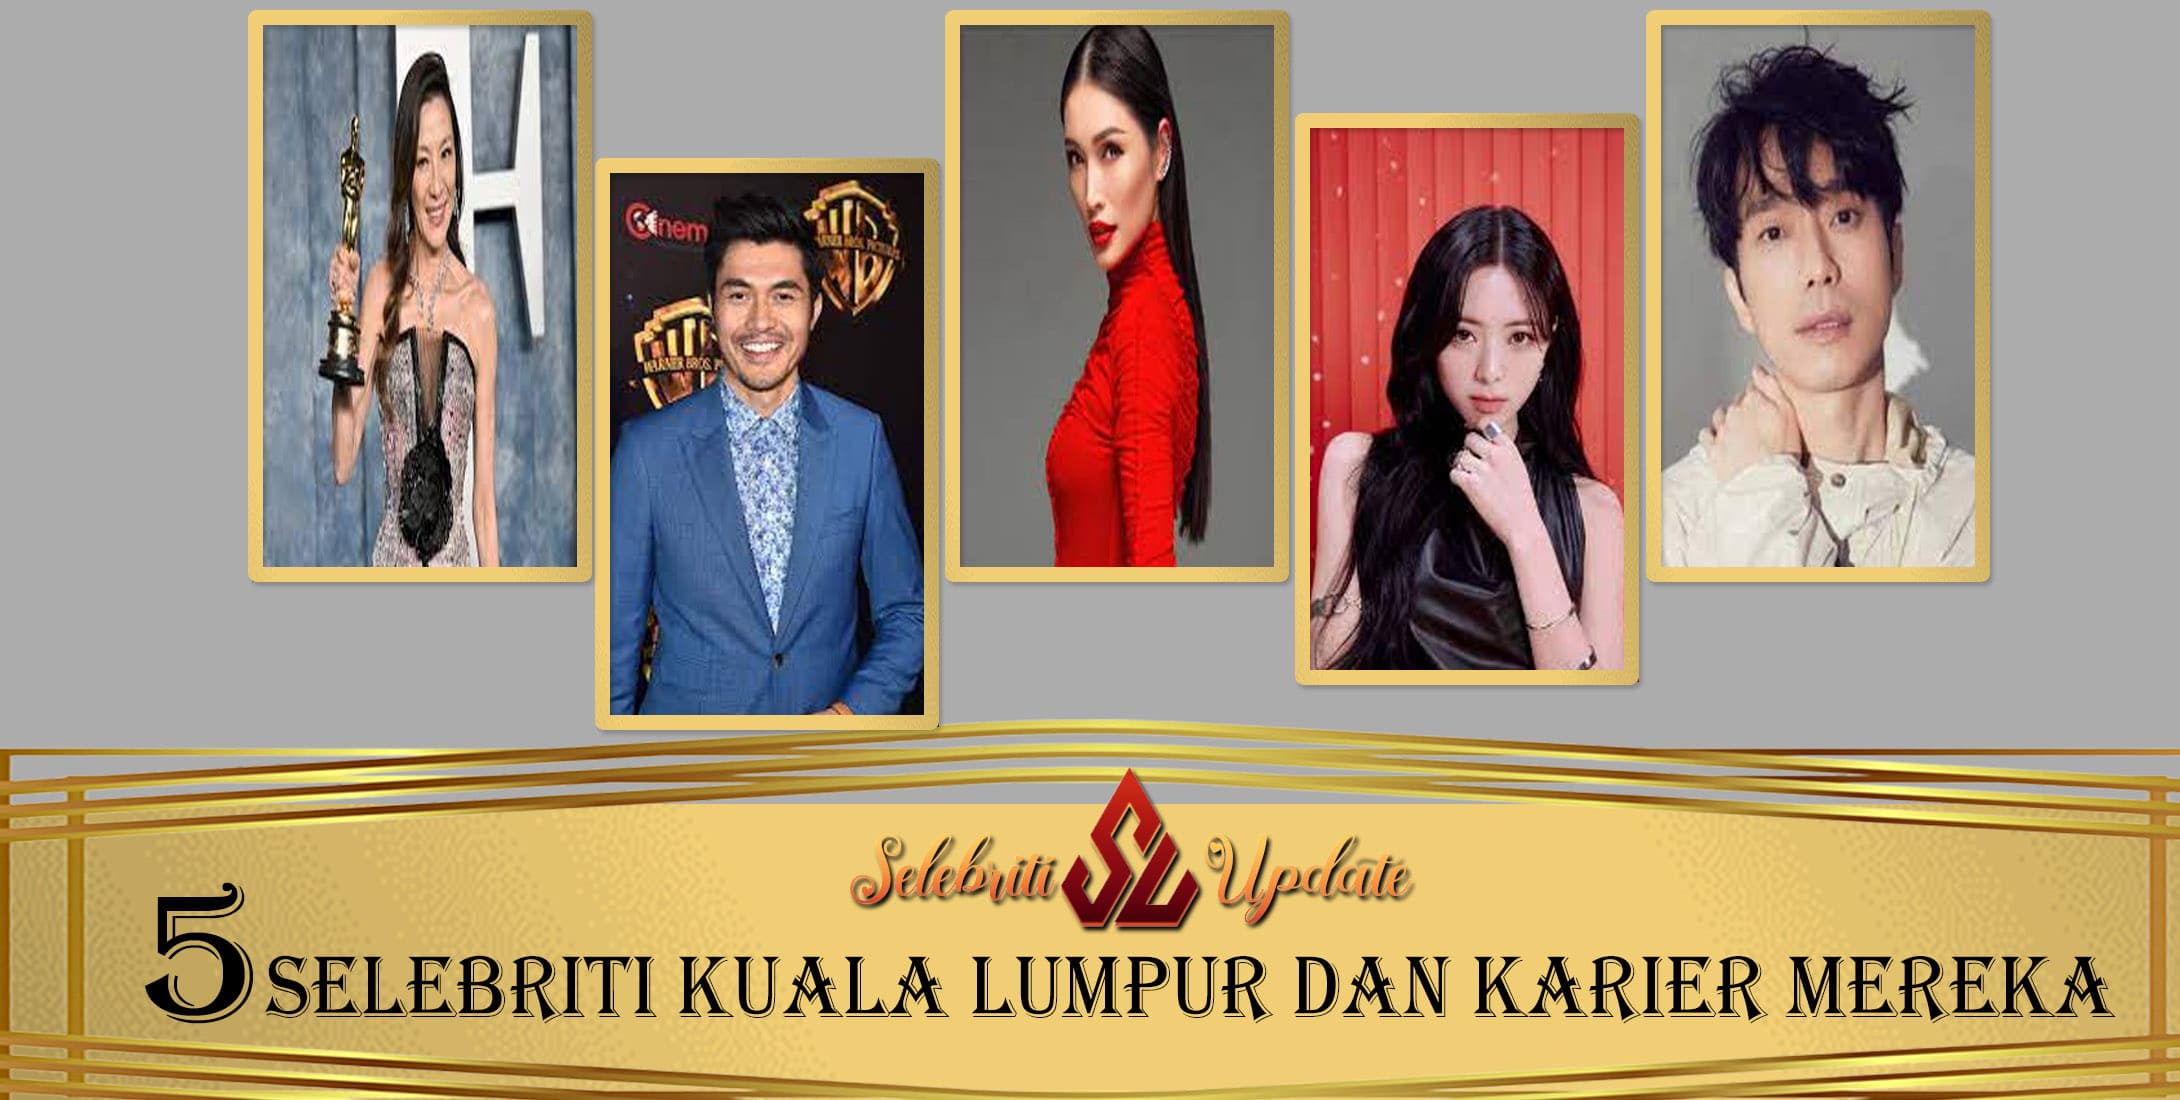 5 Selebriti Kuala Lumpur dan Karier Mereka